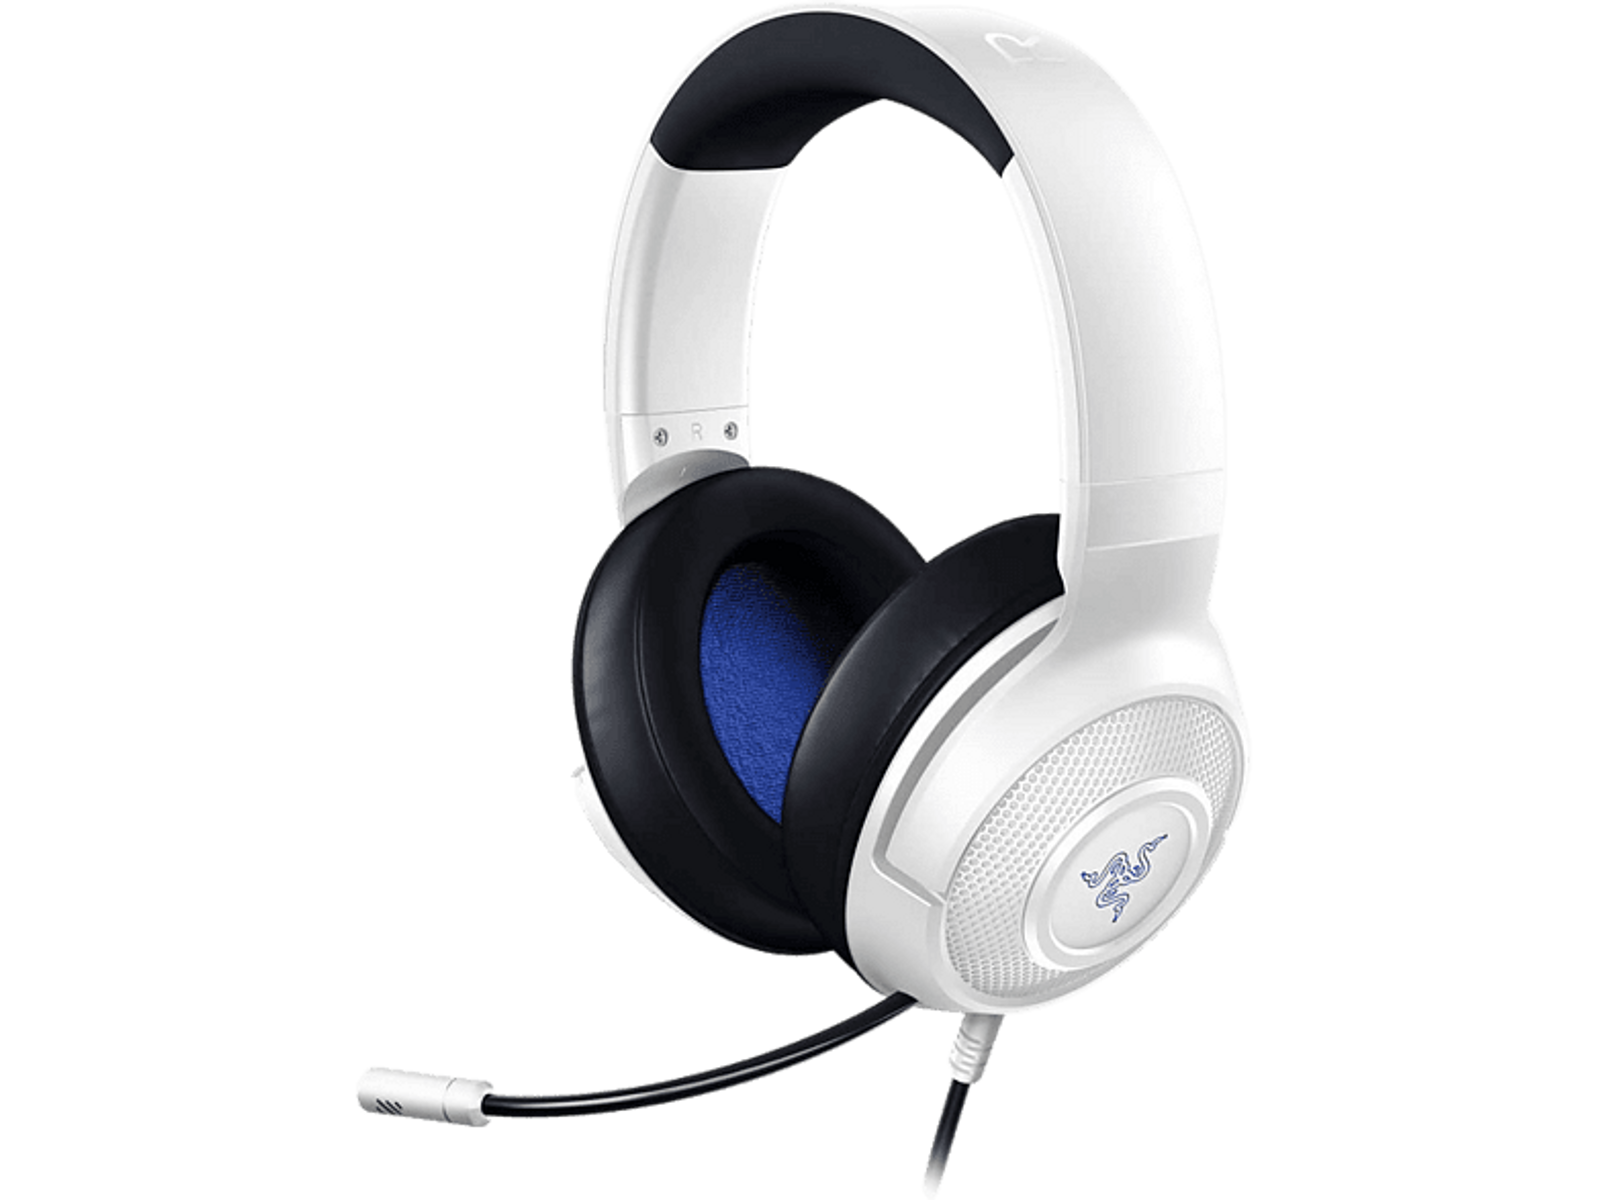 KRAKEN RAZER CONSOLE FOR Over-ear Headset Gaming Weiß/Blau X RZ04-02890500-R3M1 WHITE,